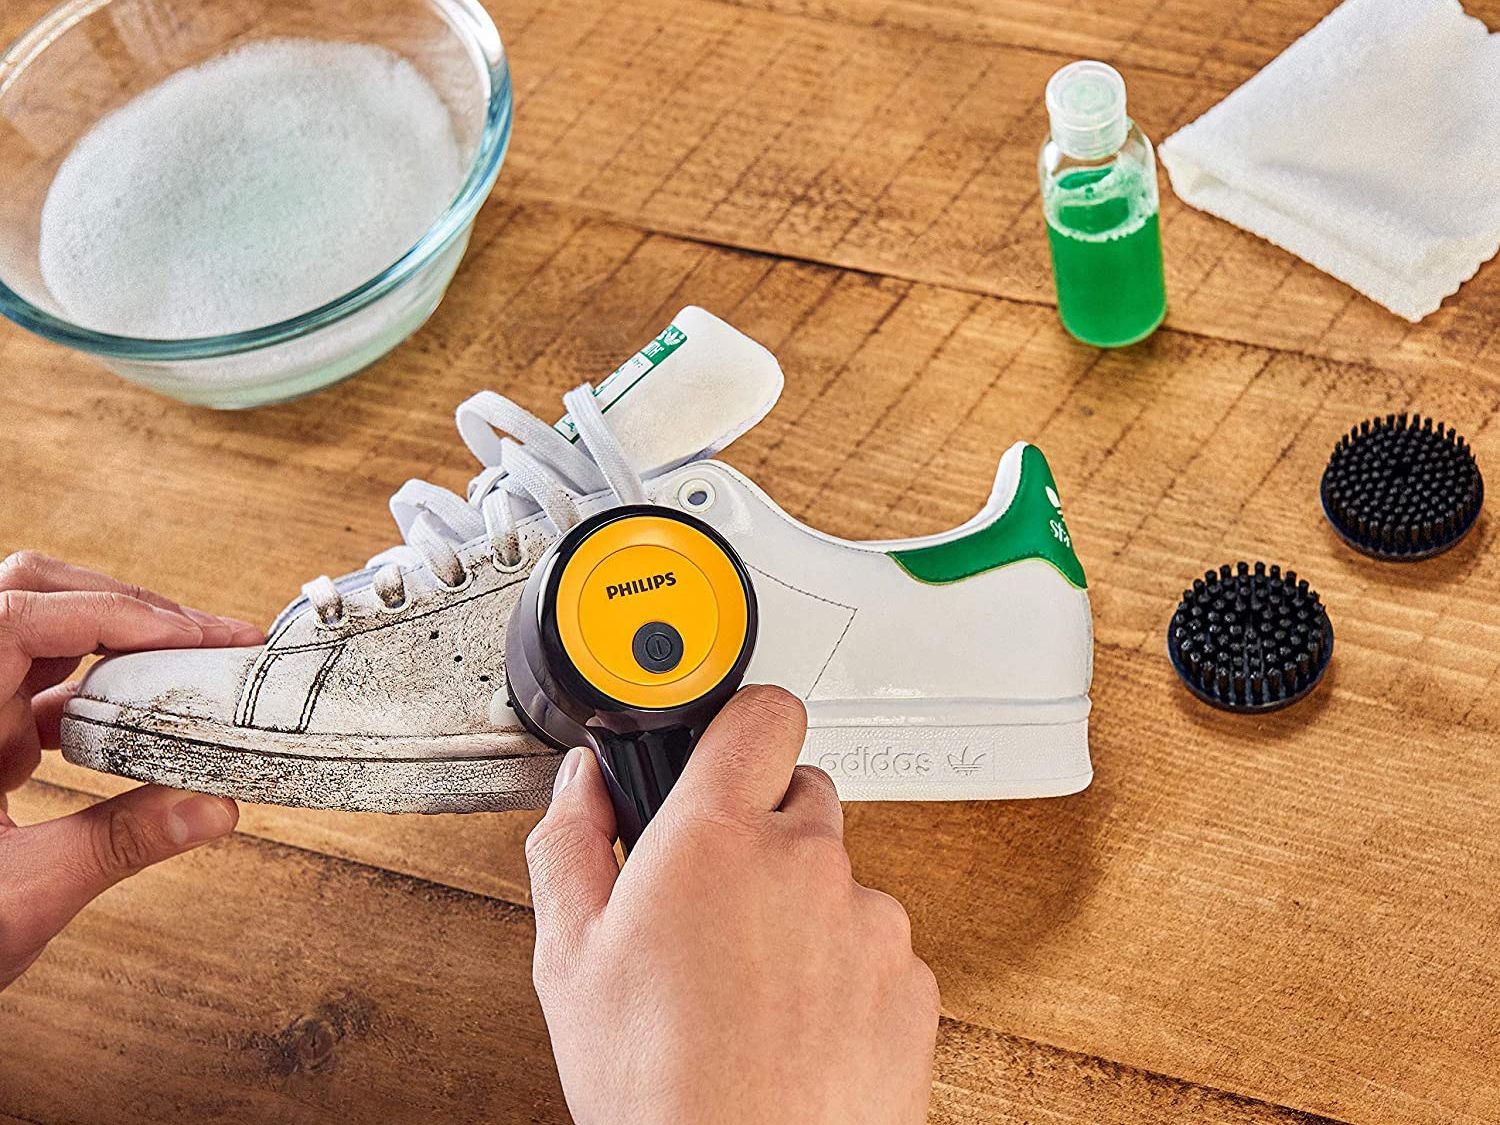 Tendance de la semaine : la brosse nettoyante à chaussures de Philips !